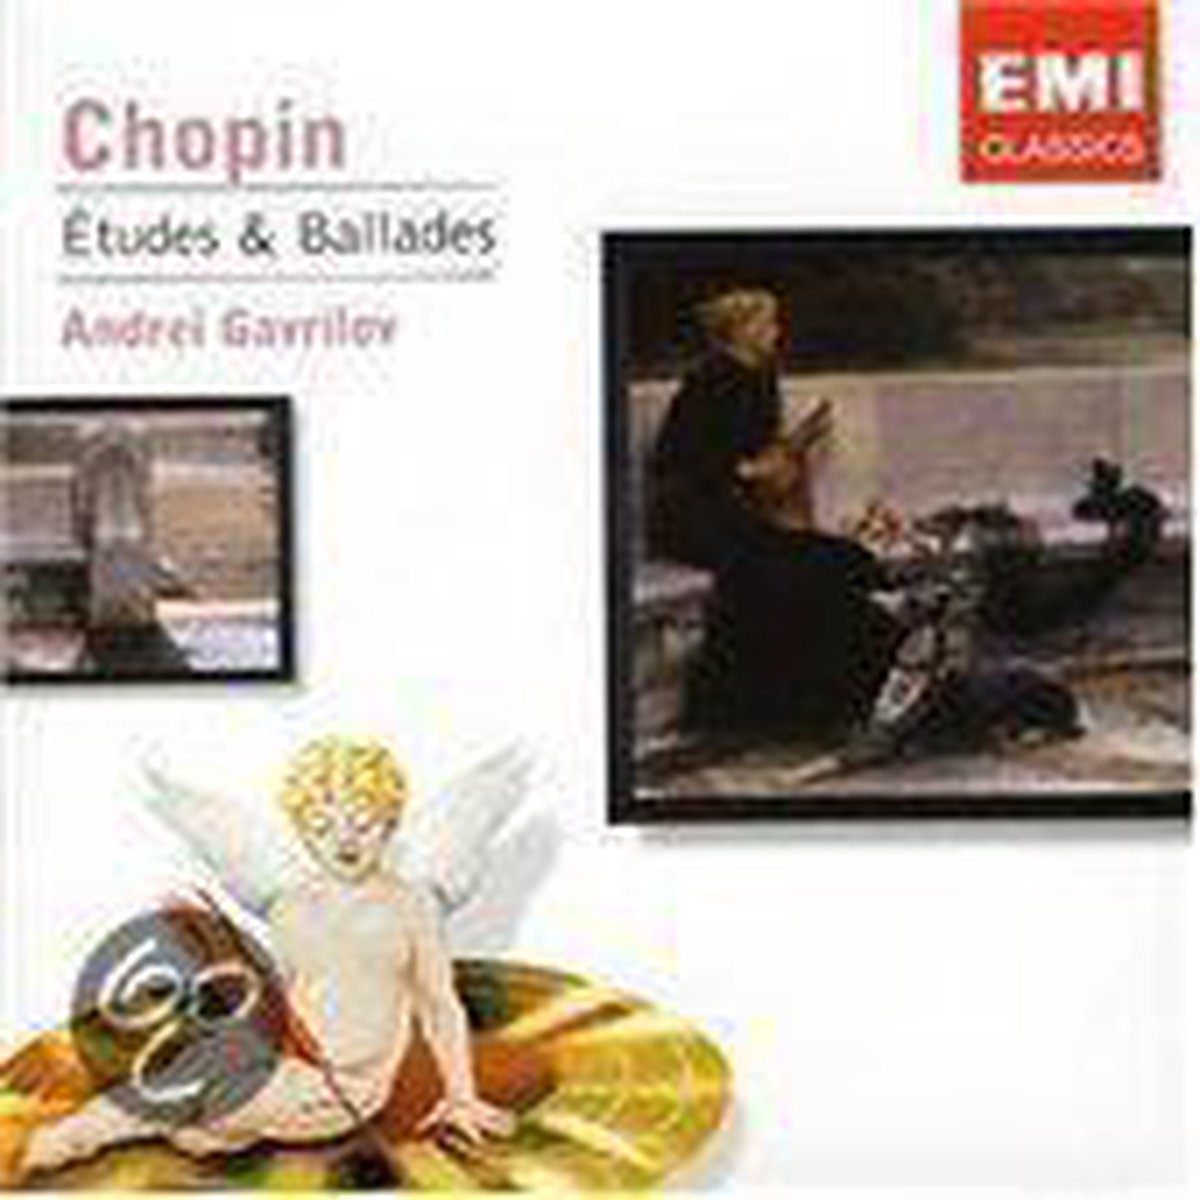 Chopin: Etudes:.. - Andrei Gavrilov